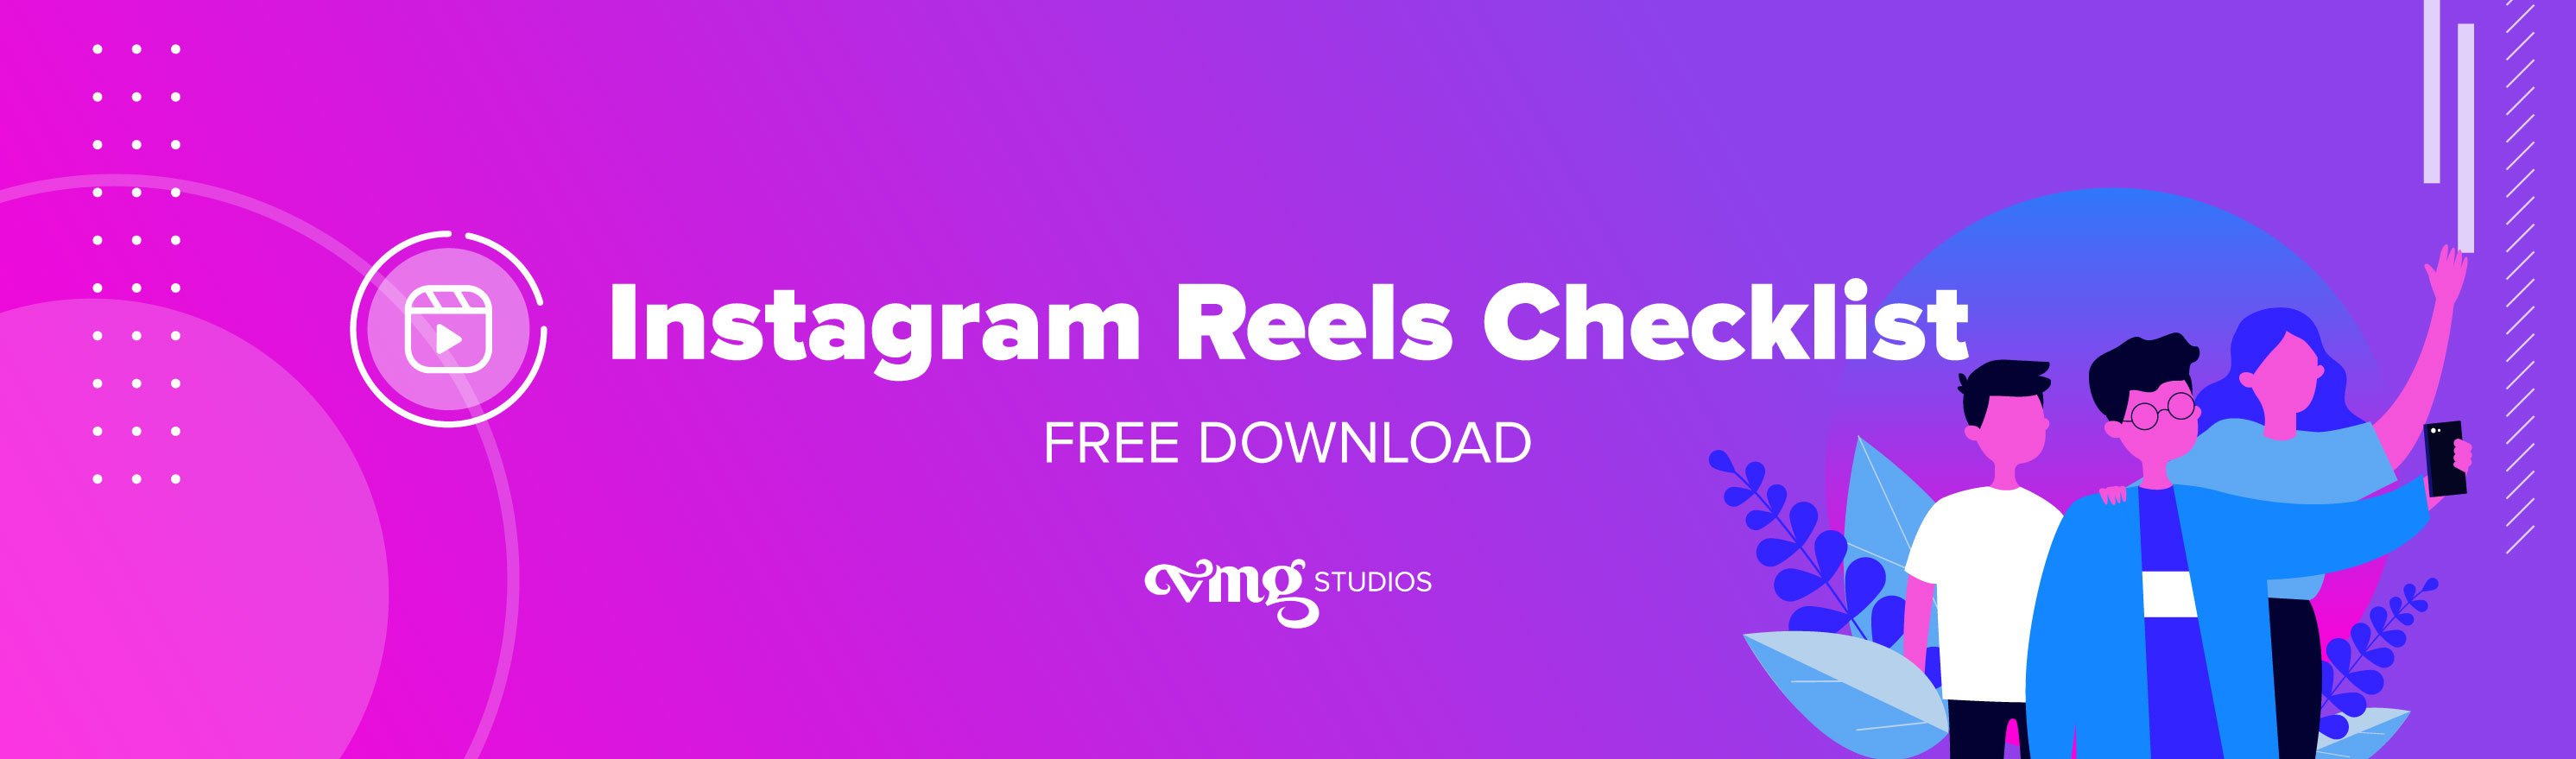 Instagram Reels Checklist free download